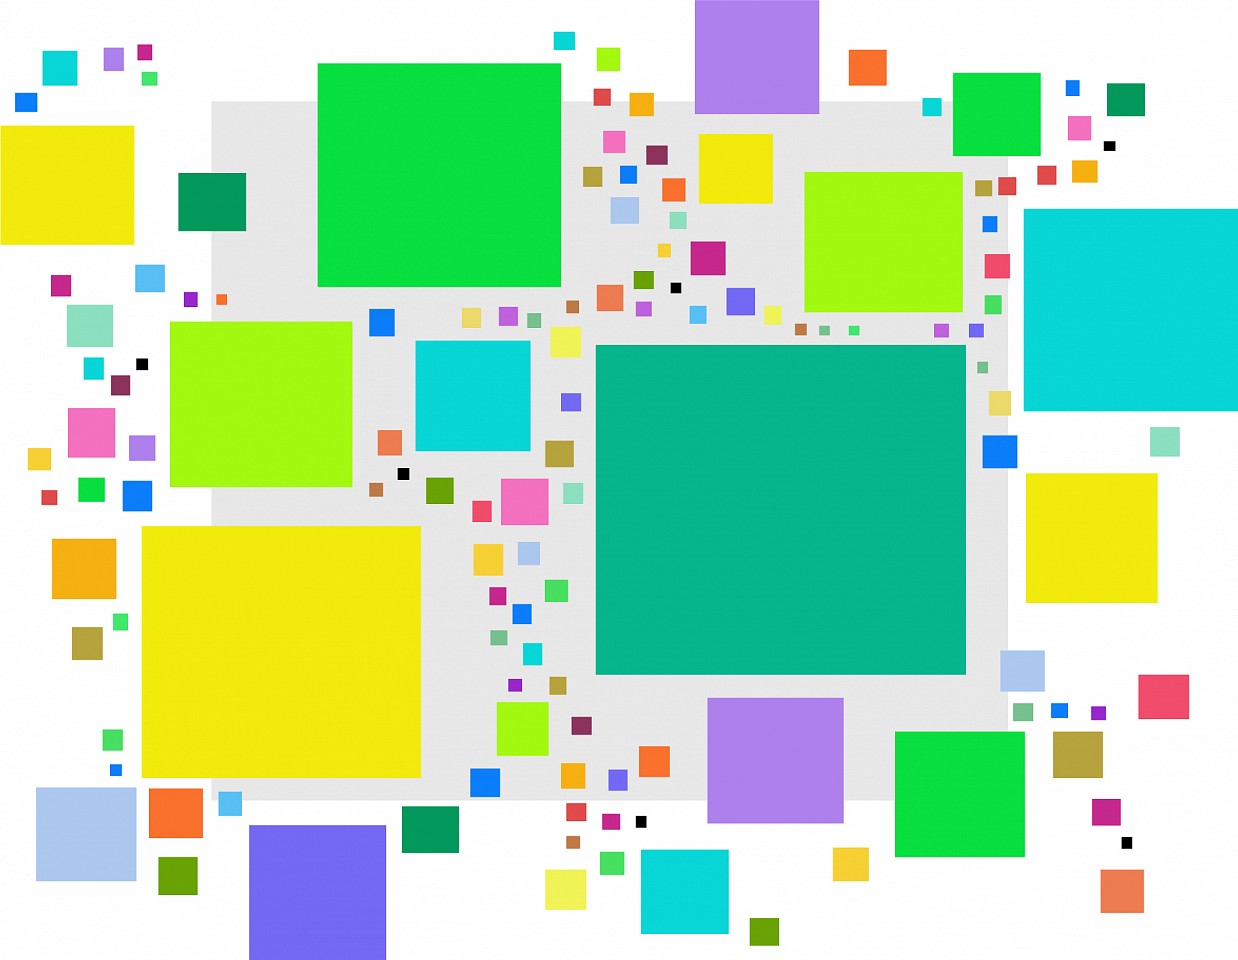 Dane Albert, Color Blocks #13, 2023
Acrylic on canvas (Concept), 48 x 60 in. (121.9 x 152.4 cm)
Series of colored blocks in multiple configurations
DA.cb-2023-013